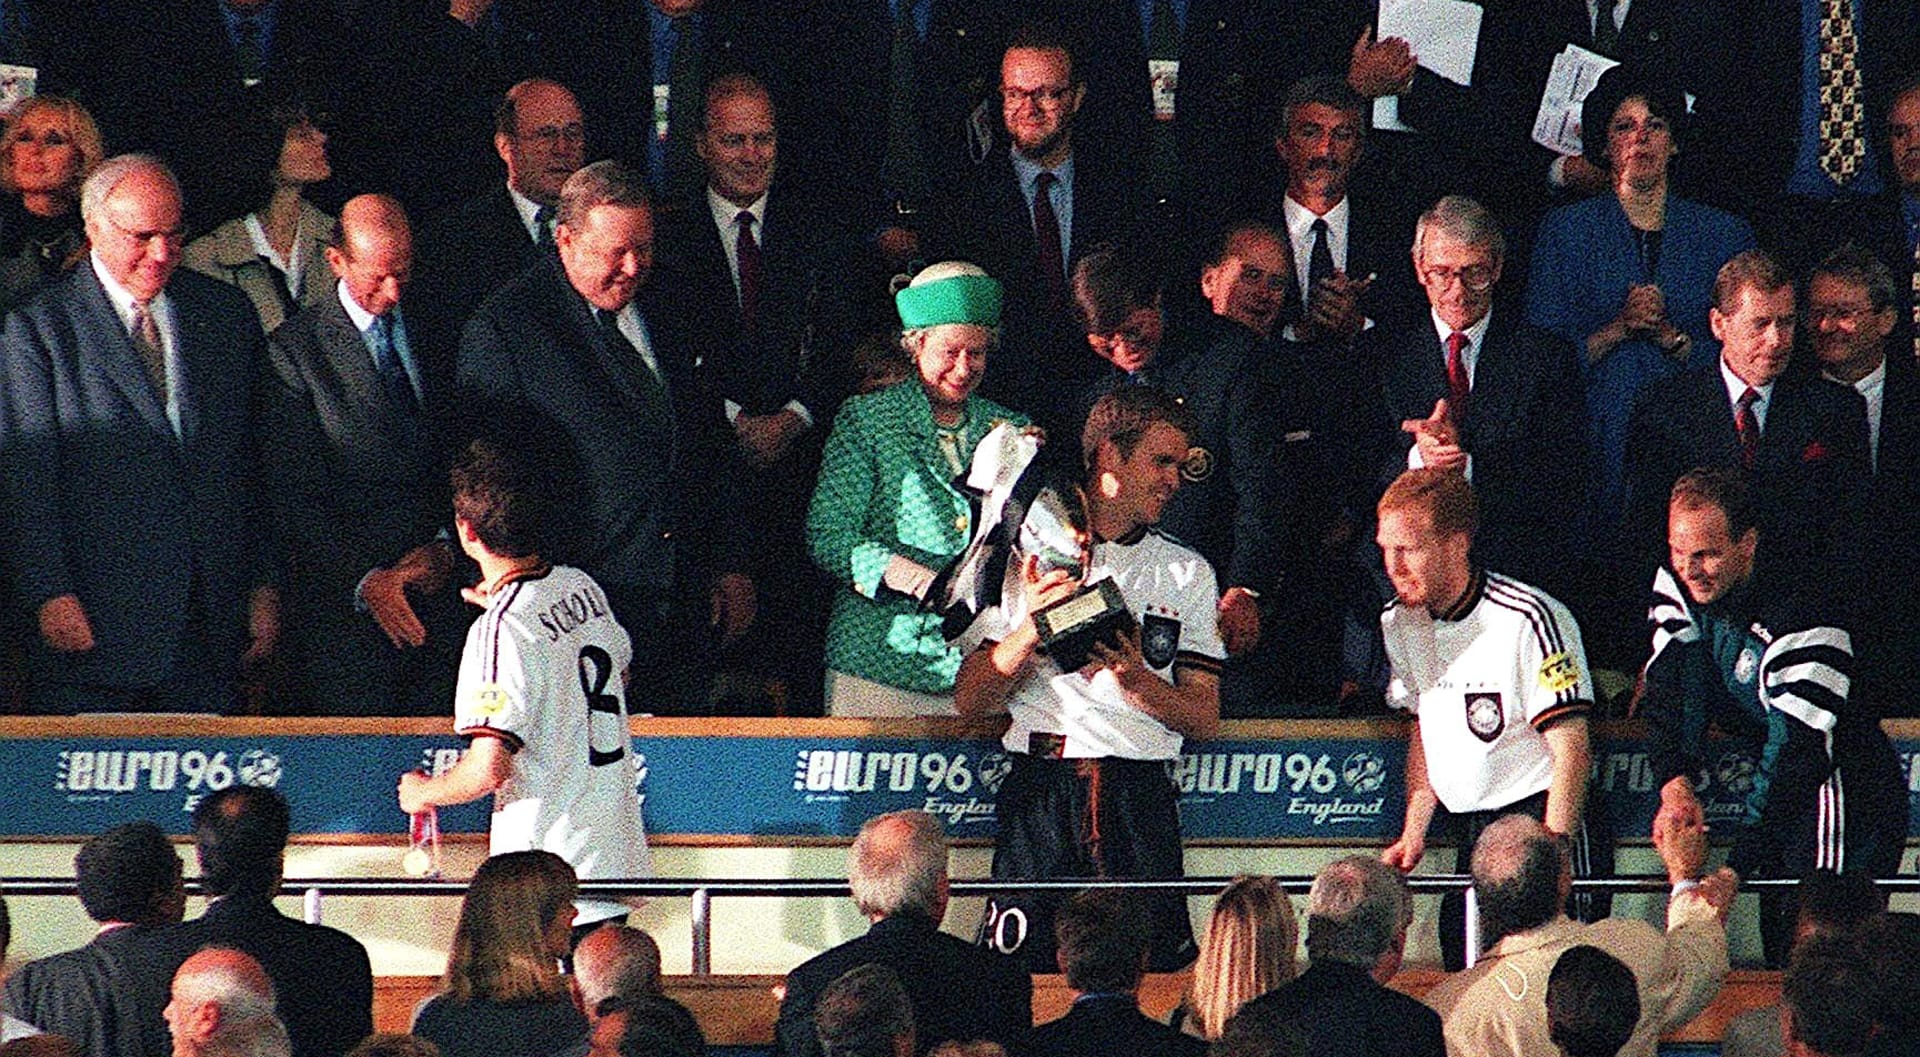 Oliver Bierhoff se neslušně otáčí zády ke královně Alžbětě II. na londýnském stadionu ve Wembley po vítězném finále Euro 1996. Zcela vpravo v lóži Ivan Kočárník, tehdejší ministr financí, vedle něj zleva prezident Václav Havel. Po jeho boku britský premiér John Major. Zleva od královny stojí Lennart Johansson, bývalý prezident UEFA, královnin manžel princ Philip a zcela vlevo německý kancléře Helmut Kohl.